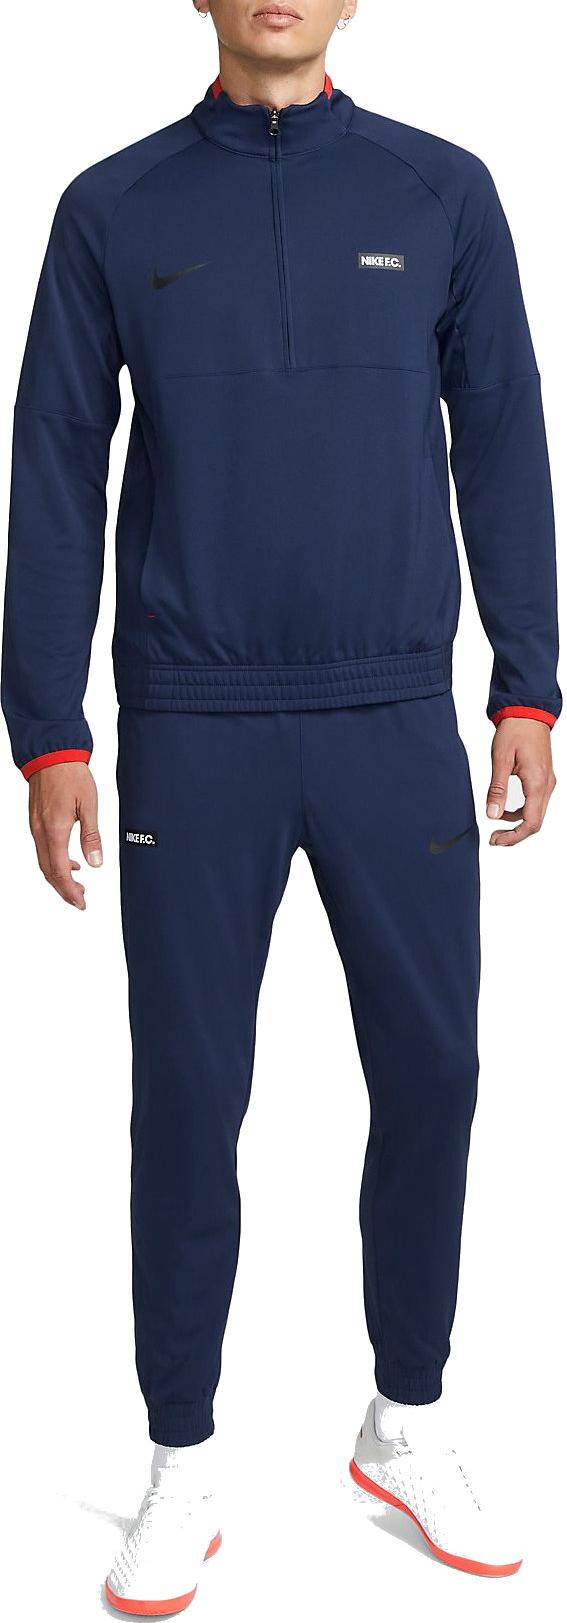 Σετ Nike F.C. Men's Knit Football Drill Suit